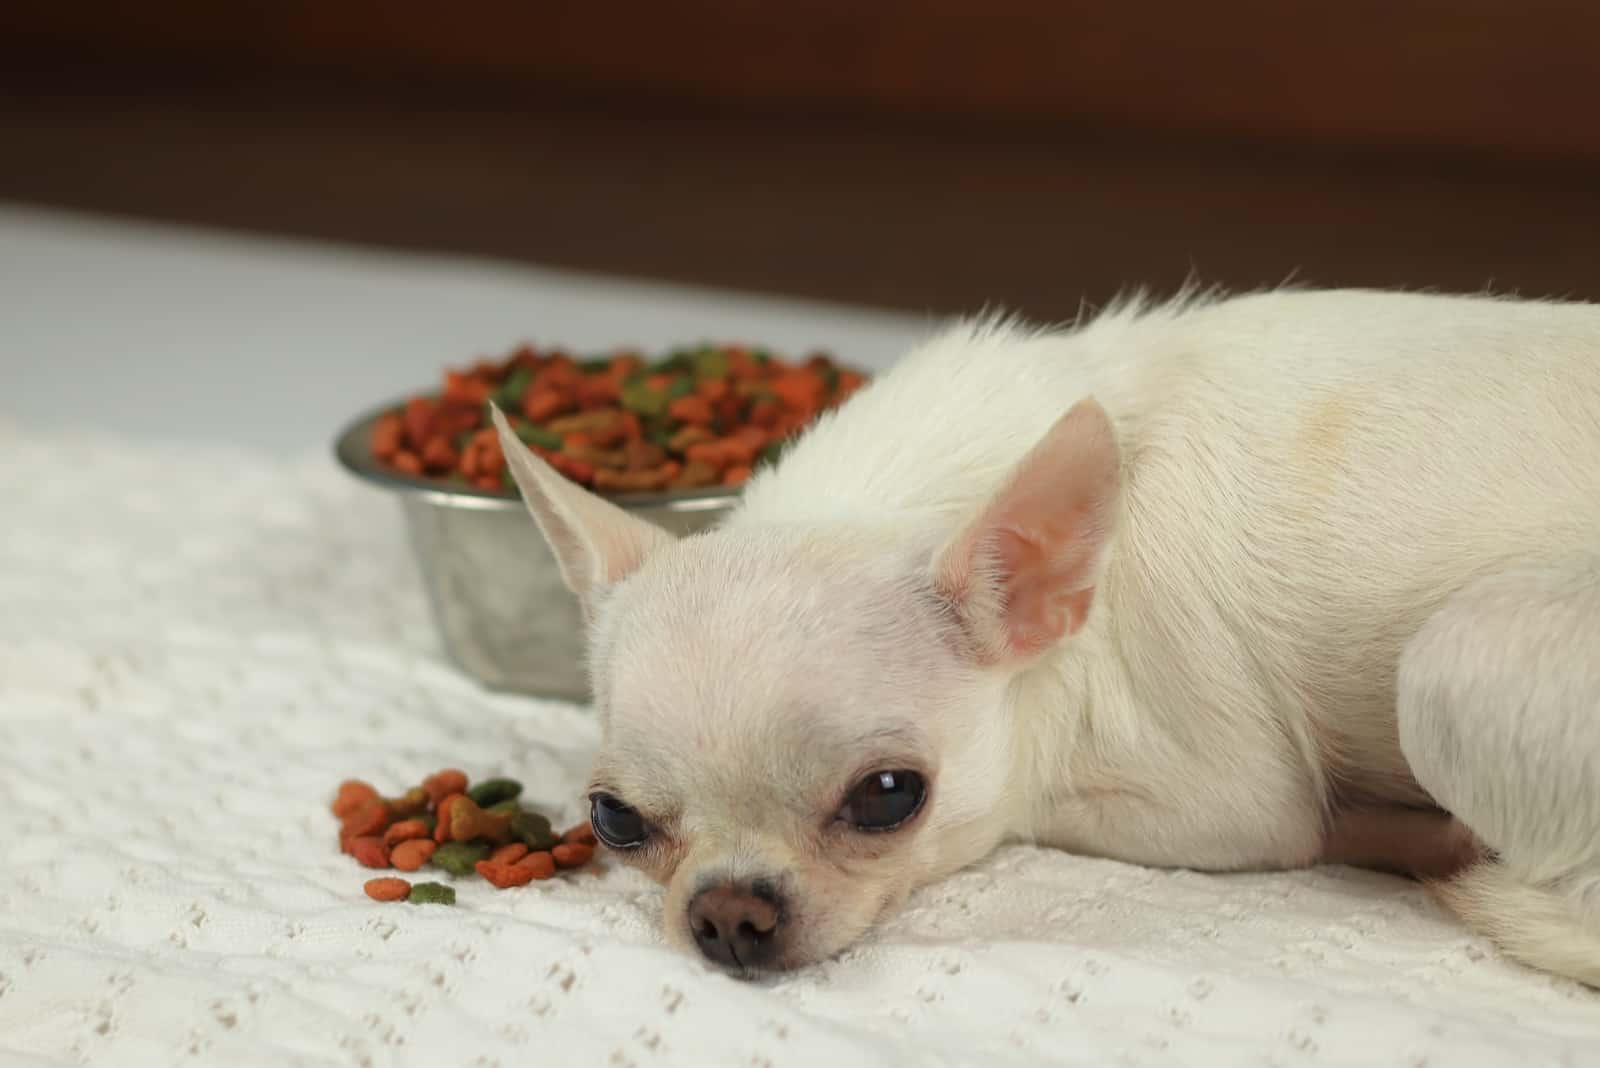 Der alte weiße Chihuahua lehnt Essen ab